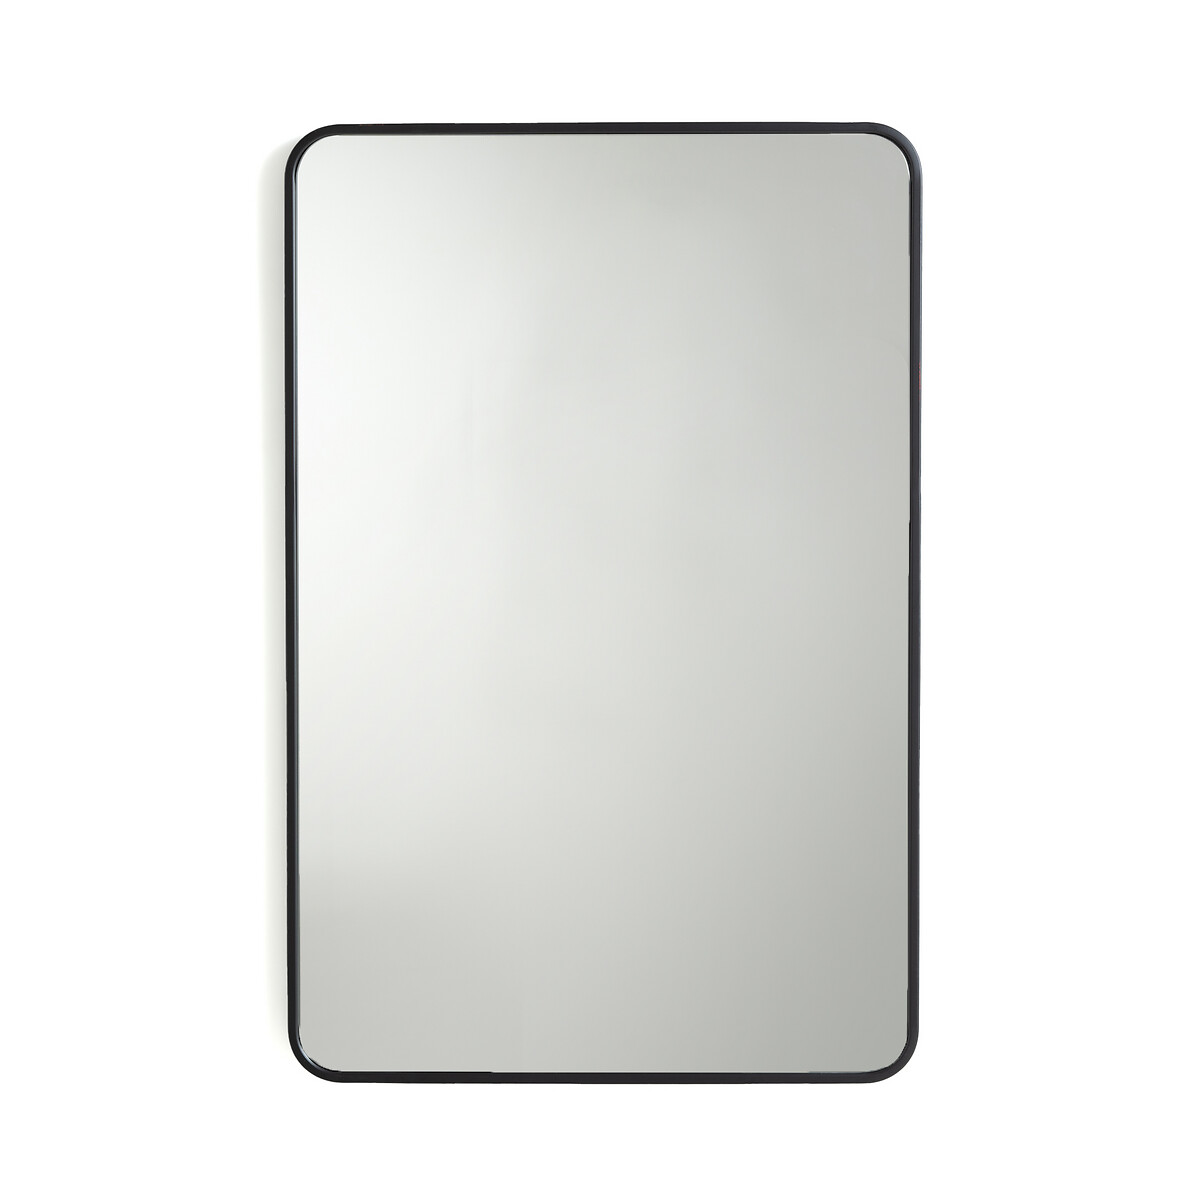 Зеркало с отделкой металлом В90 см Iodus единый размер черный зеркало круглое с отделкой из металла 140 см iodus единый размер желтый